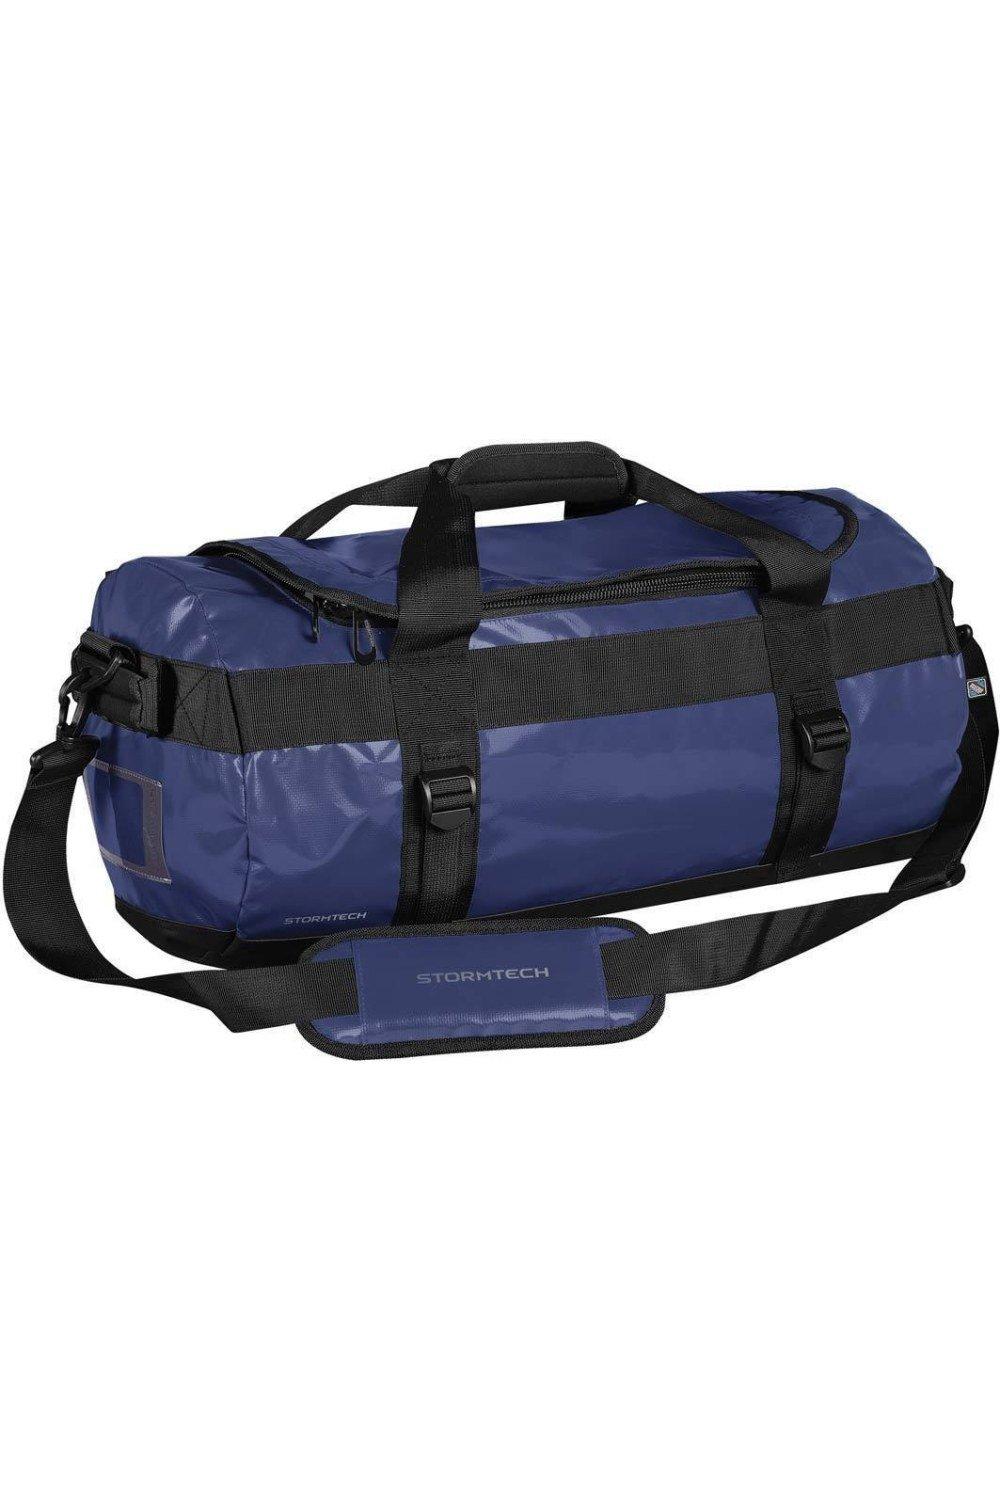 Водонепроницаемая спортивная сумка Atlantis объемом 35 л Stormtech, синий